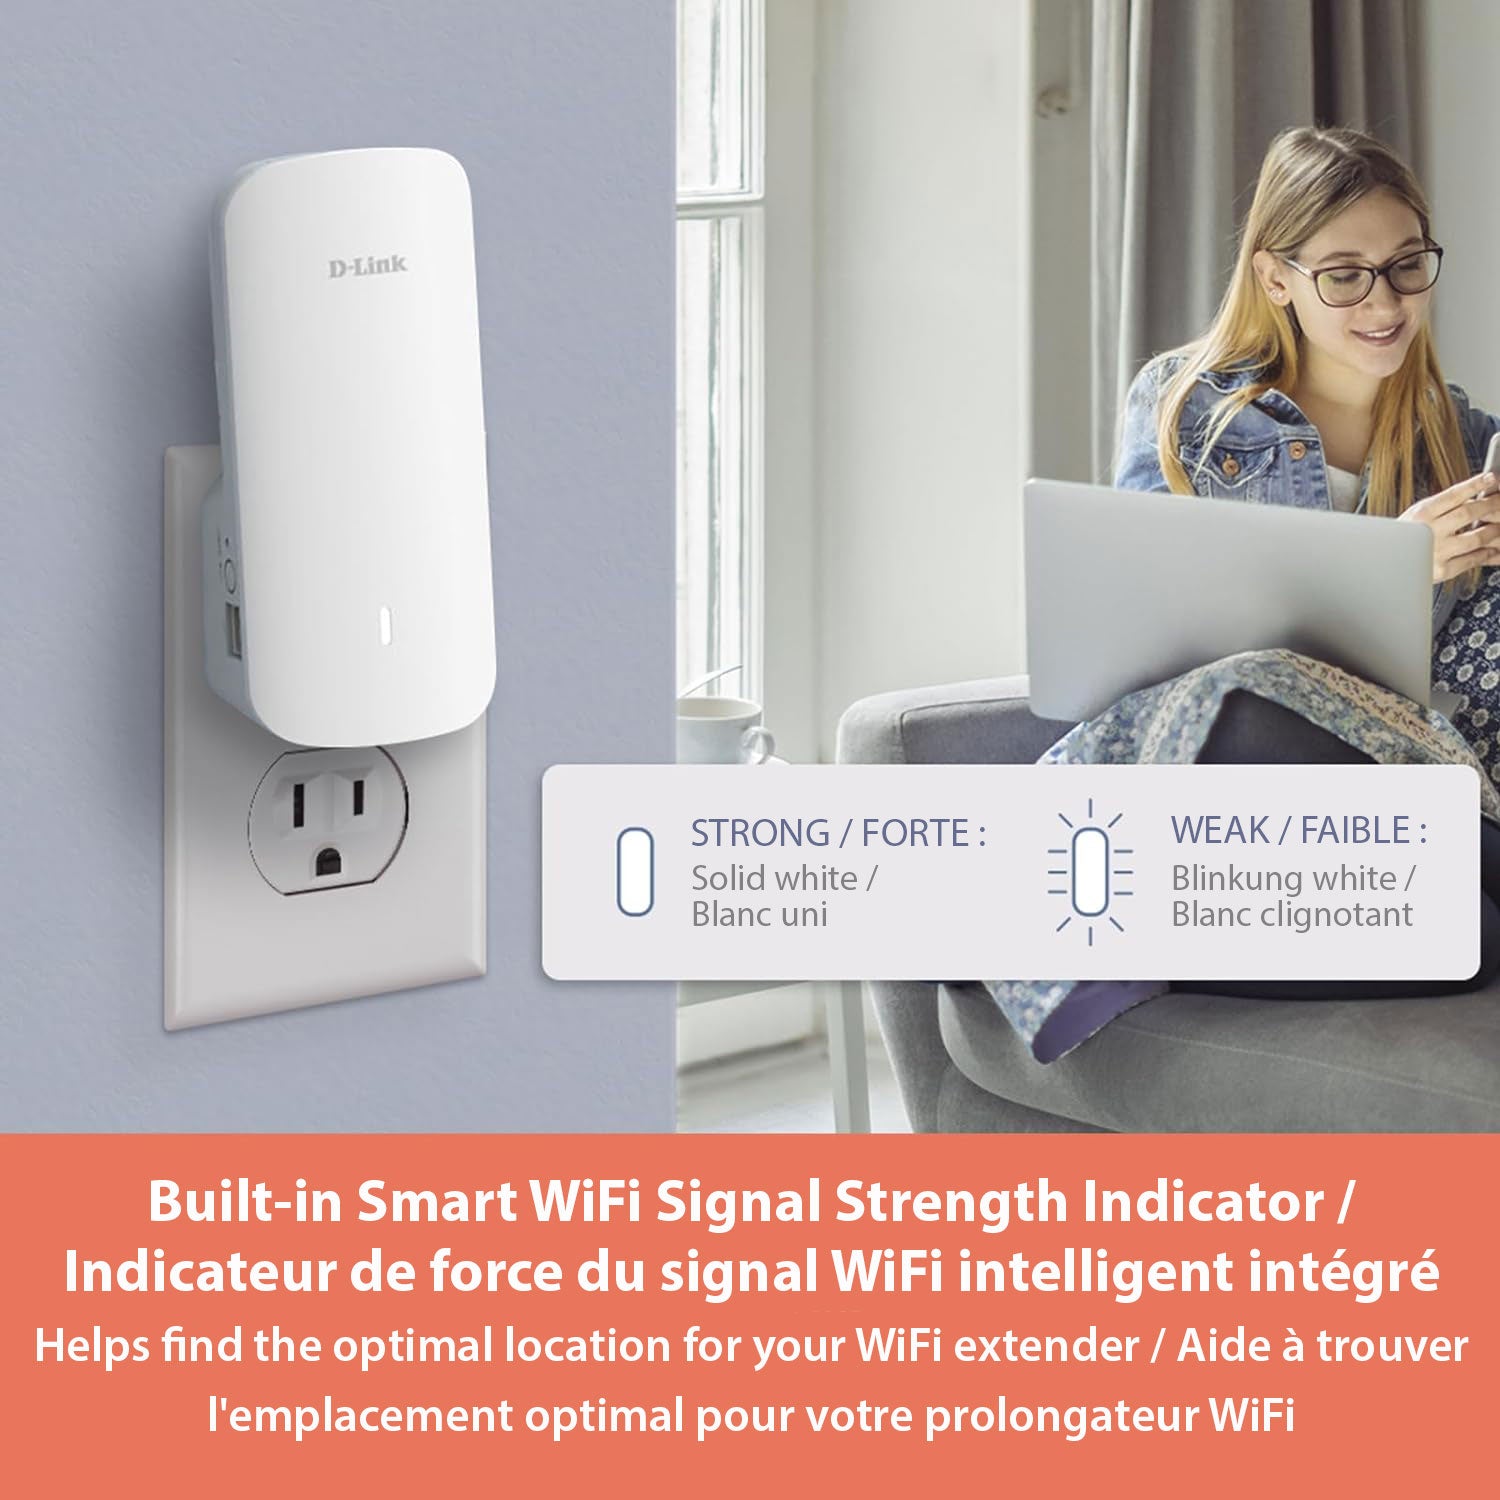 Built-in Smart WiFi Signal Strength Indicator / Indicateur de force du signal WiFi intelligent intégré Helps find the optimal location for your WiFi extender / Aide à trouver l'emplacement optimal pour votre prolongateur WiFi